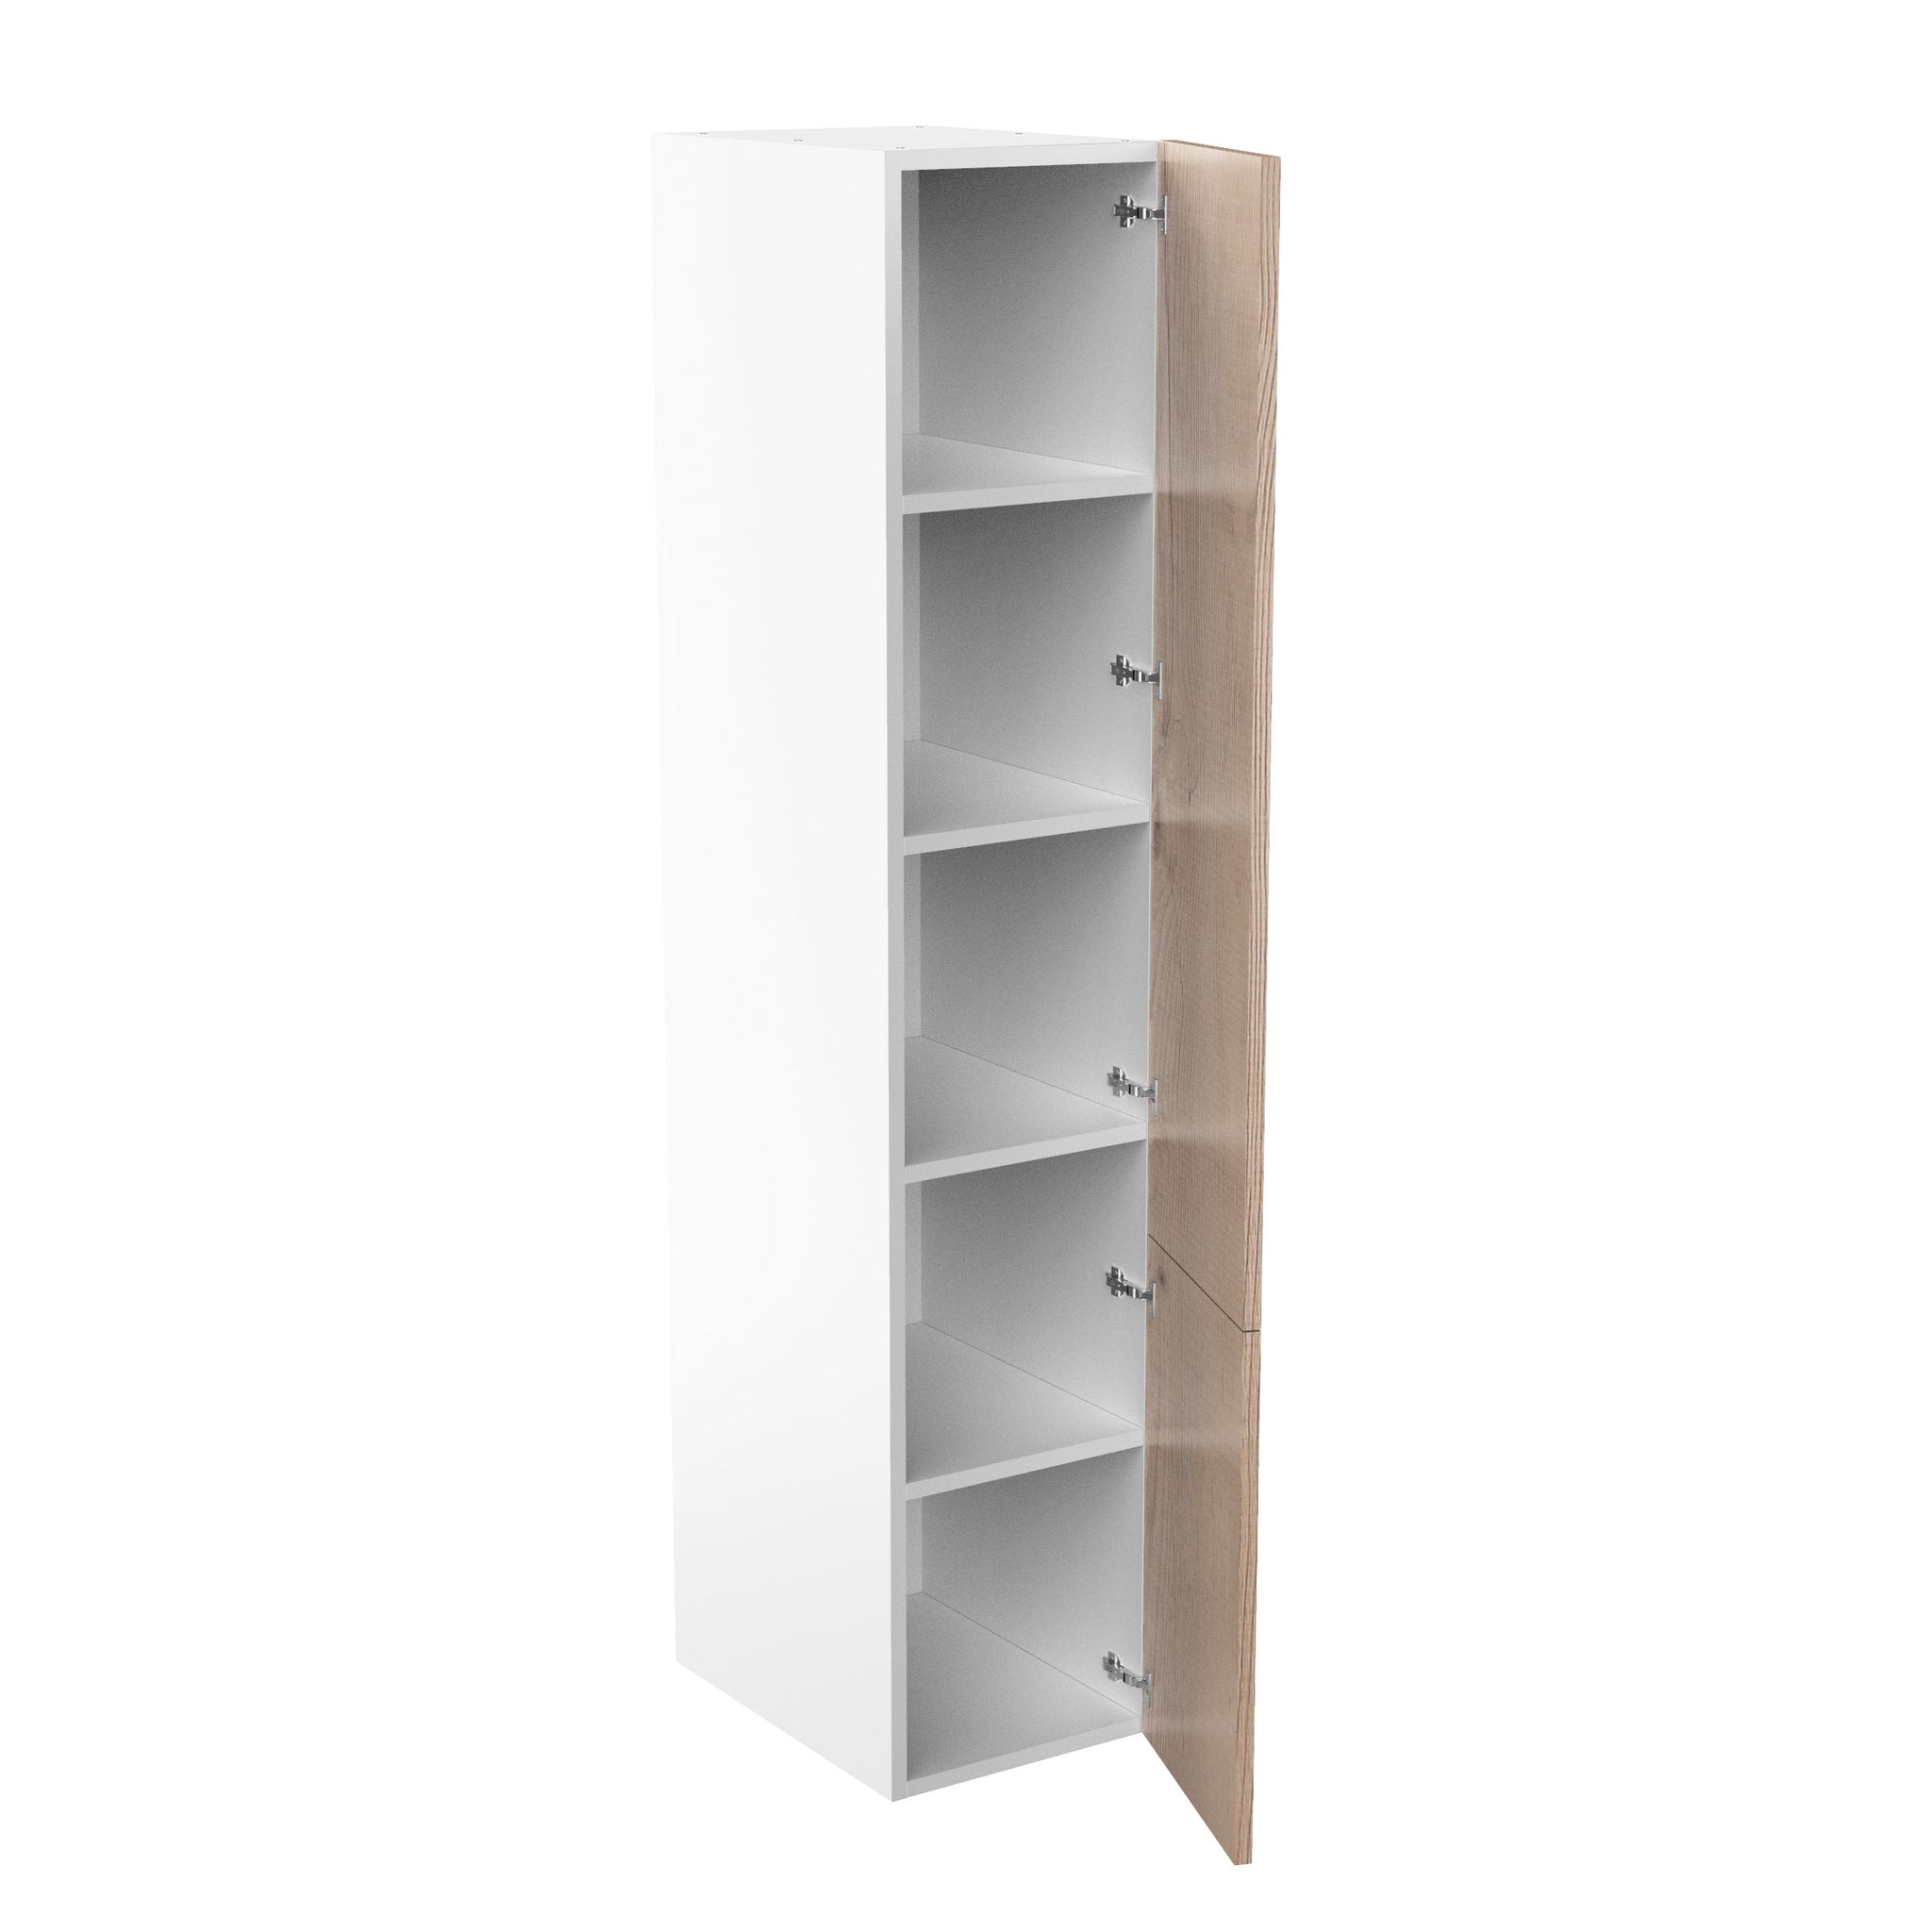 RTA - Rustic Oak - Single Door Tall Cabinets | 18"W x 90"H x 24"D